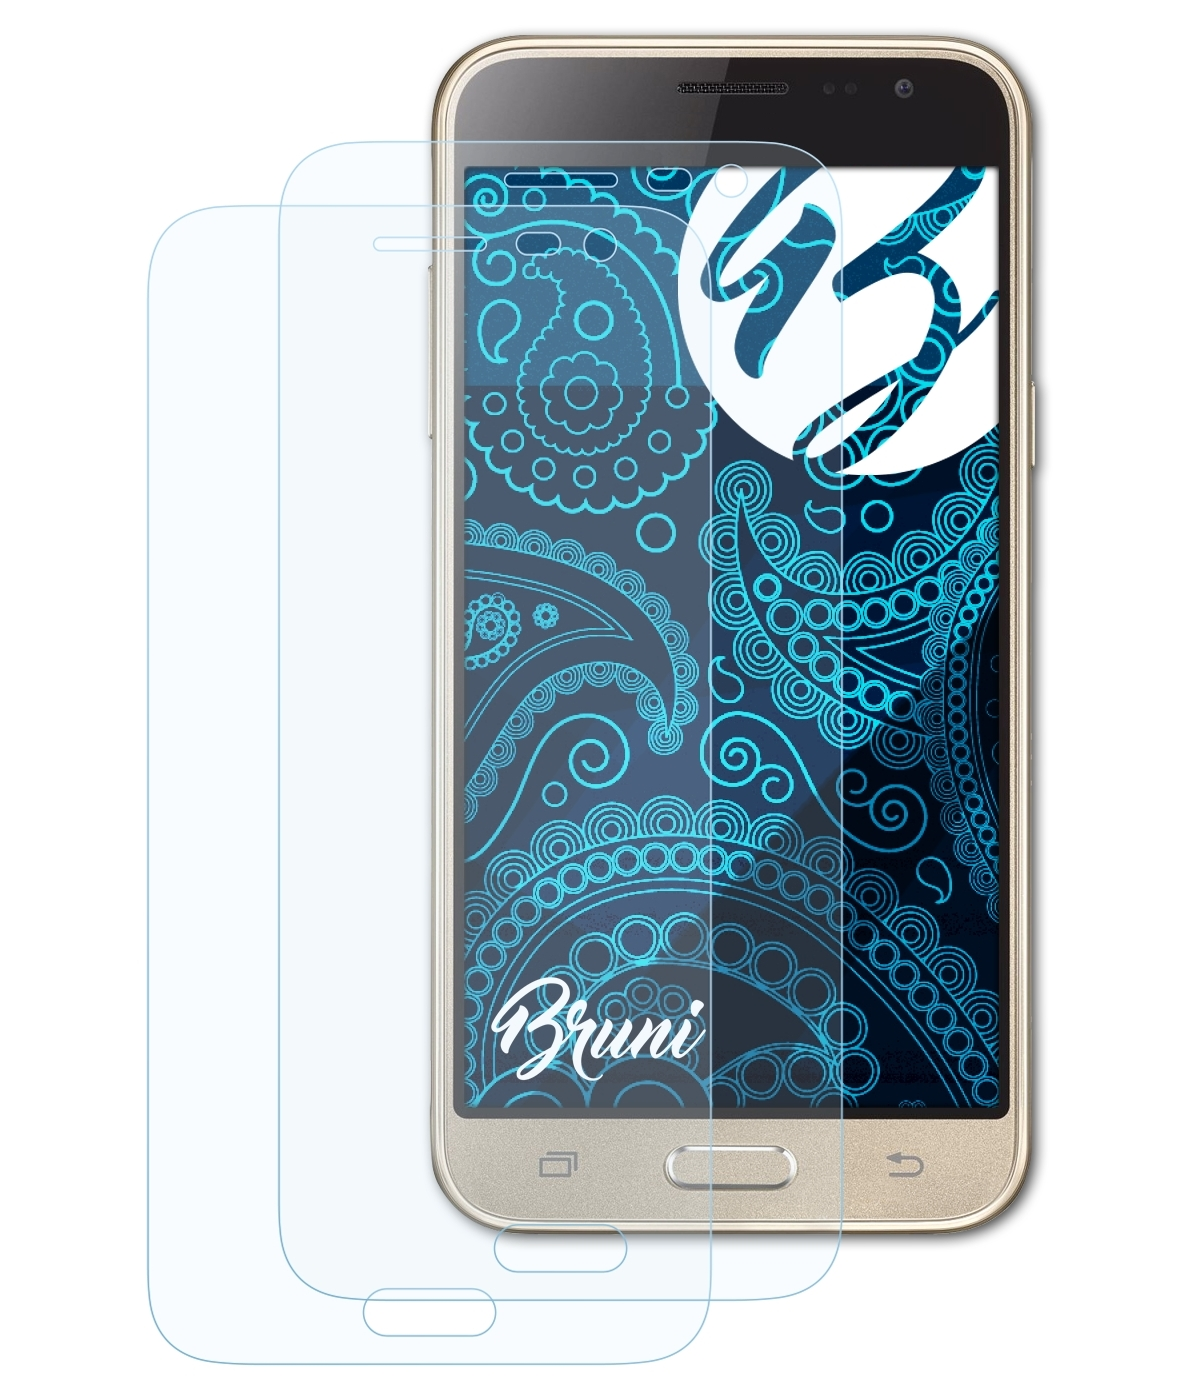 Samsung (2016)) J3 BRUNI Basics-Clear Galaxy Schutzfolie(für 2x